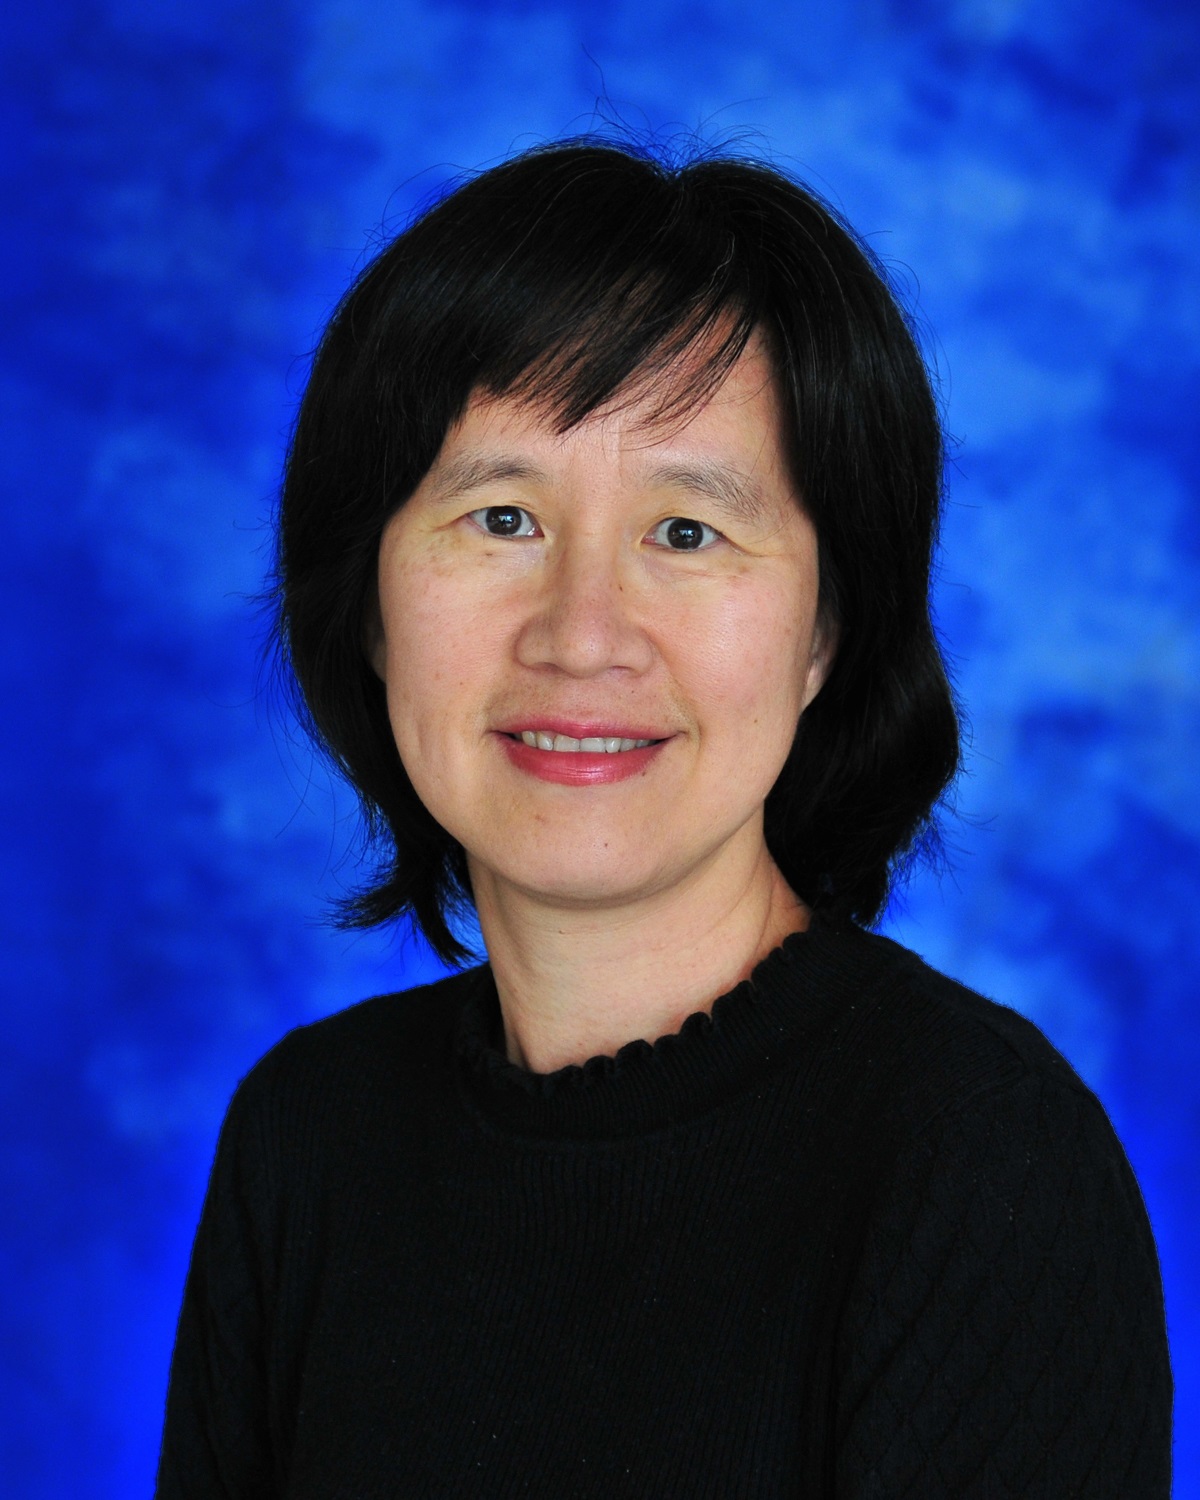 Professor Ching Te Chiu